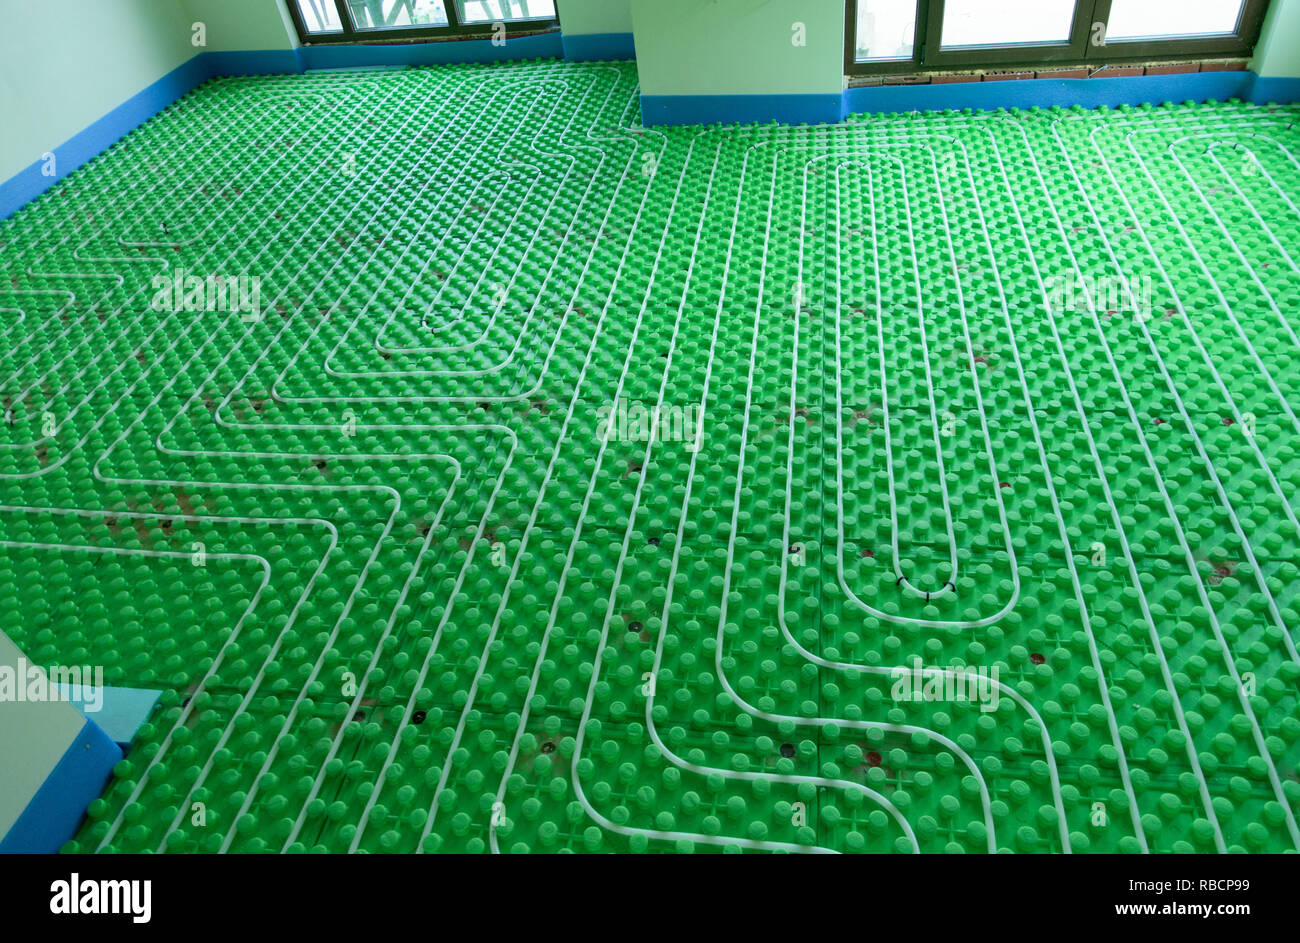 Un système de chauffage au sol vert - l'installation à domicile Banque D'Images